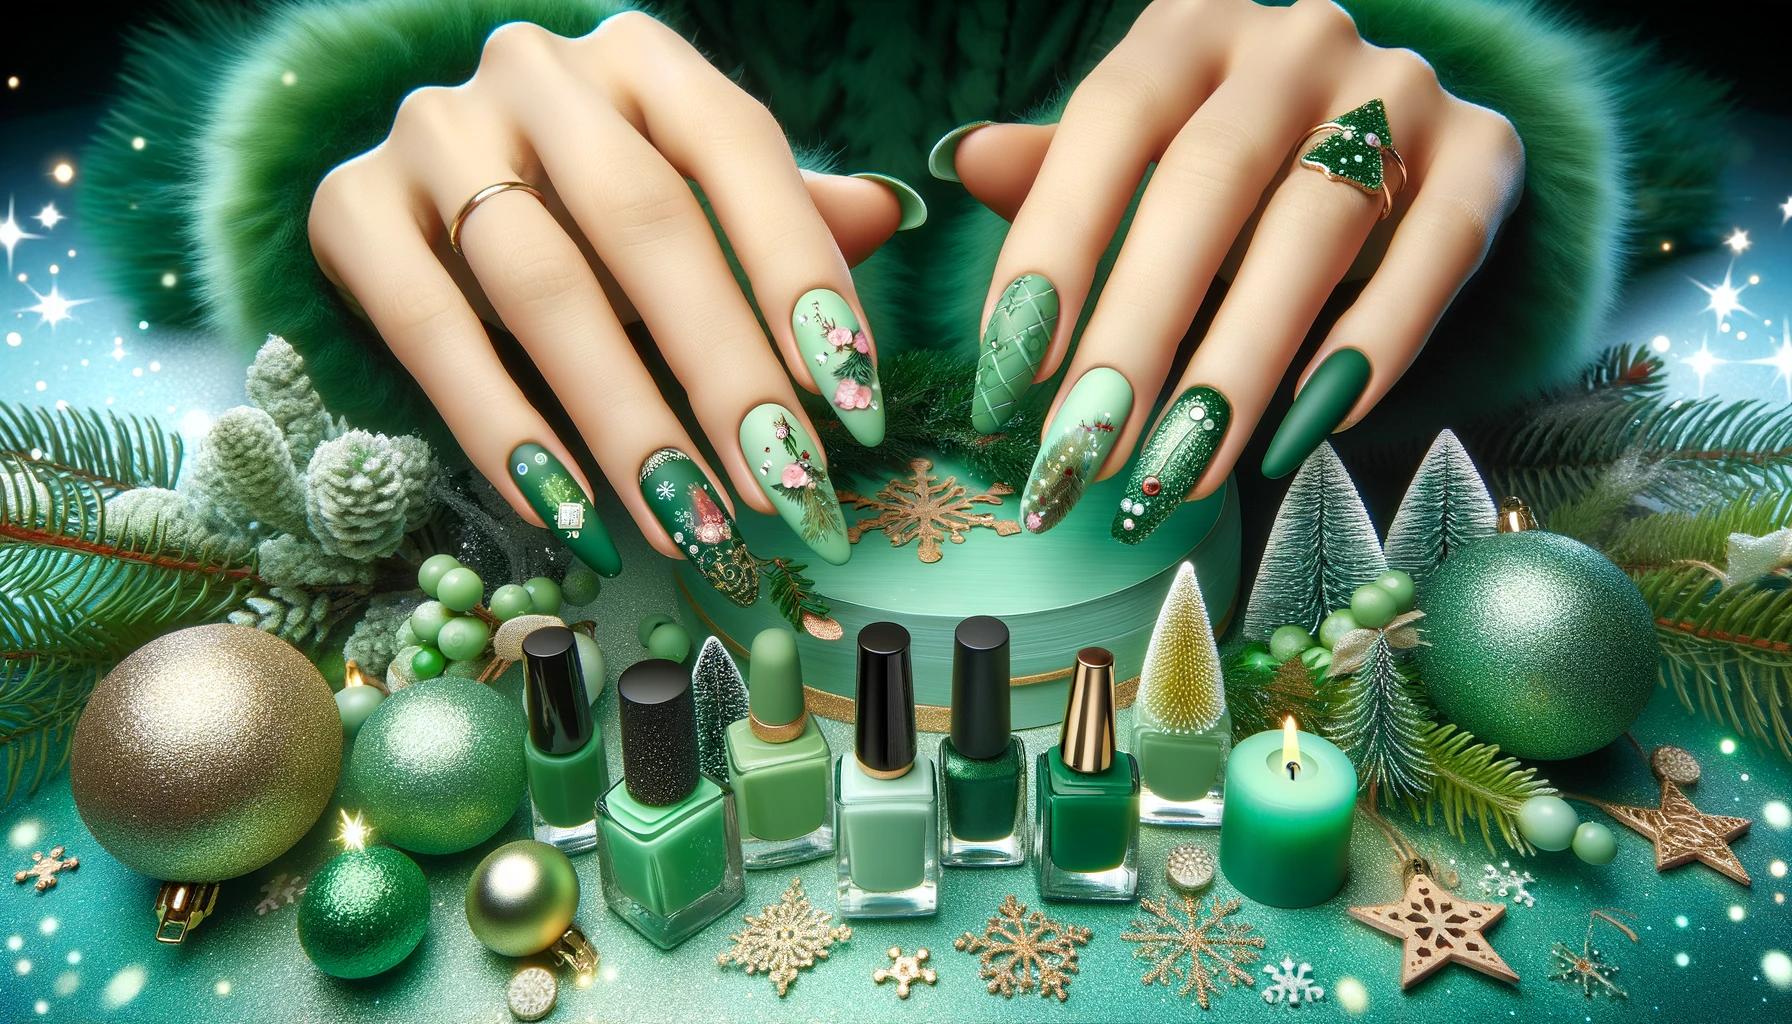 Magiczne i bajkowe świąteczne stylizacje paznokci w odcieniach zieleni, prezentujące wyjątkowe i urzekające wzory na tle barwnego i onirycznego bożonarodzeniowego krajobrazu